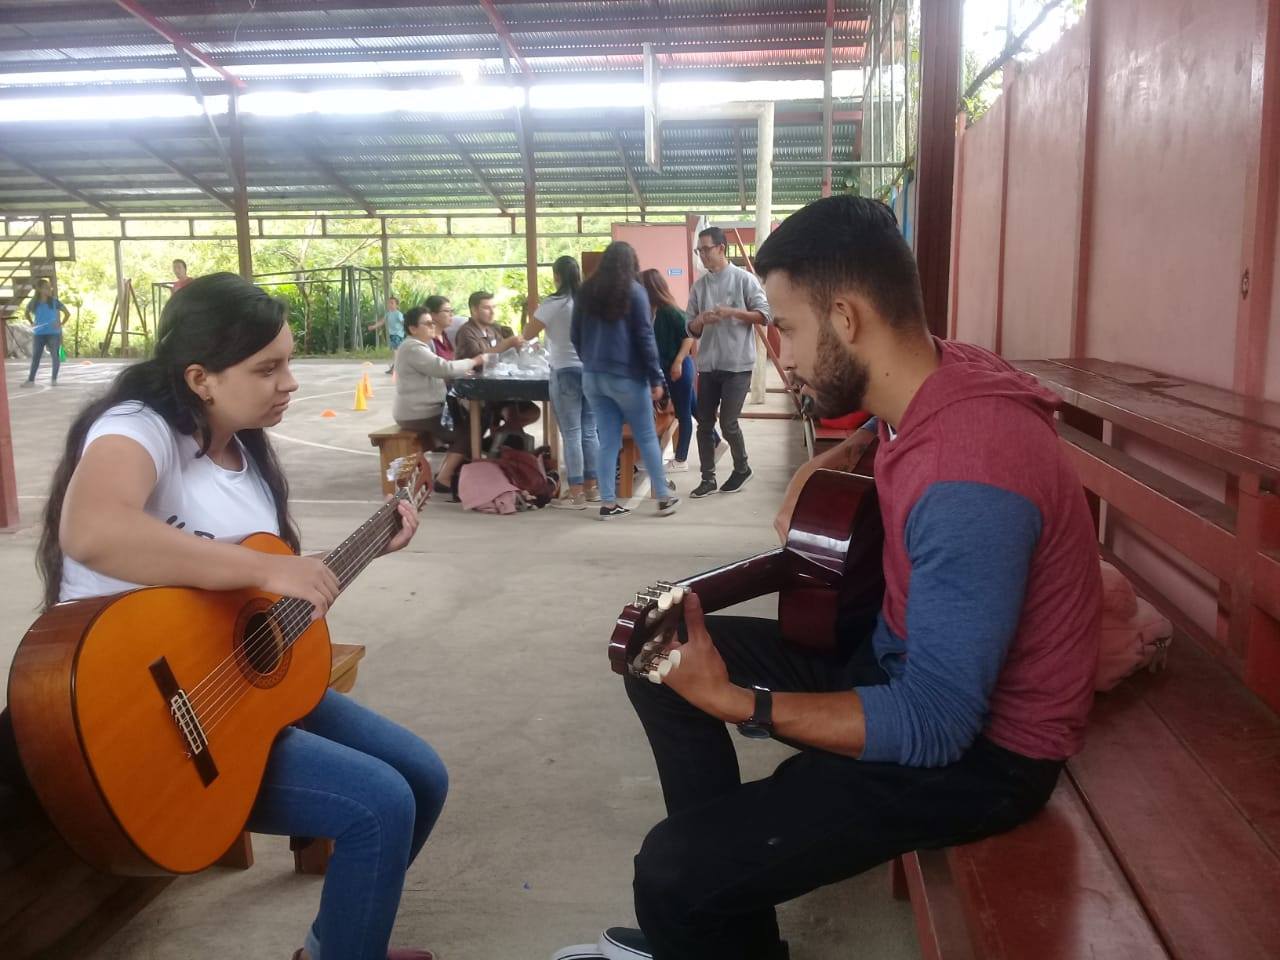 En el primer día de campamentos, se realizó un taller de guitarra para adultos en la comunidad de Pacayitas. Foto: VAS UCR.